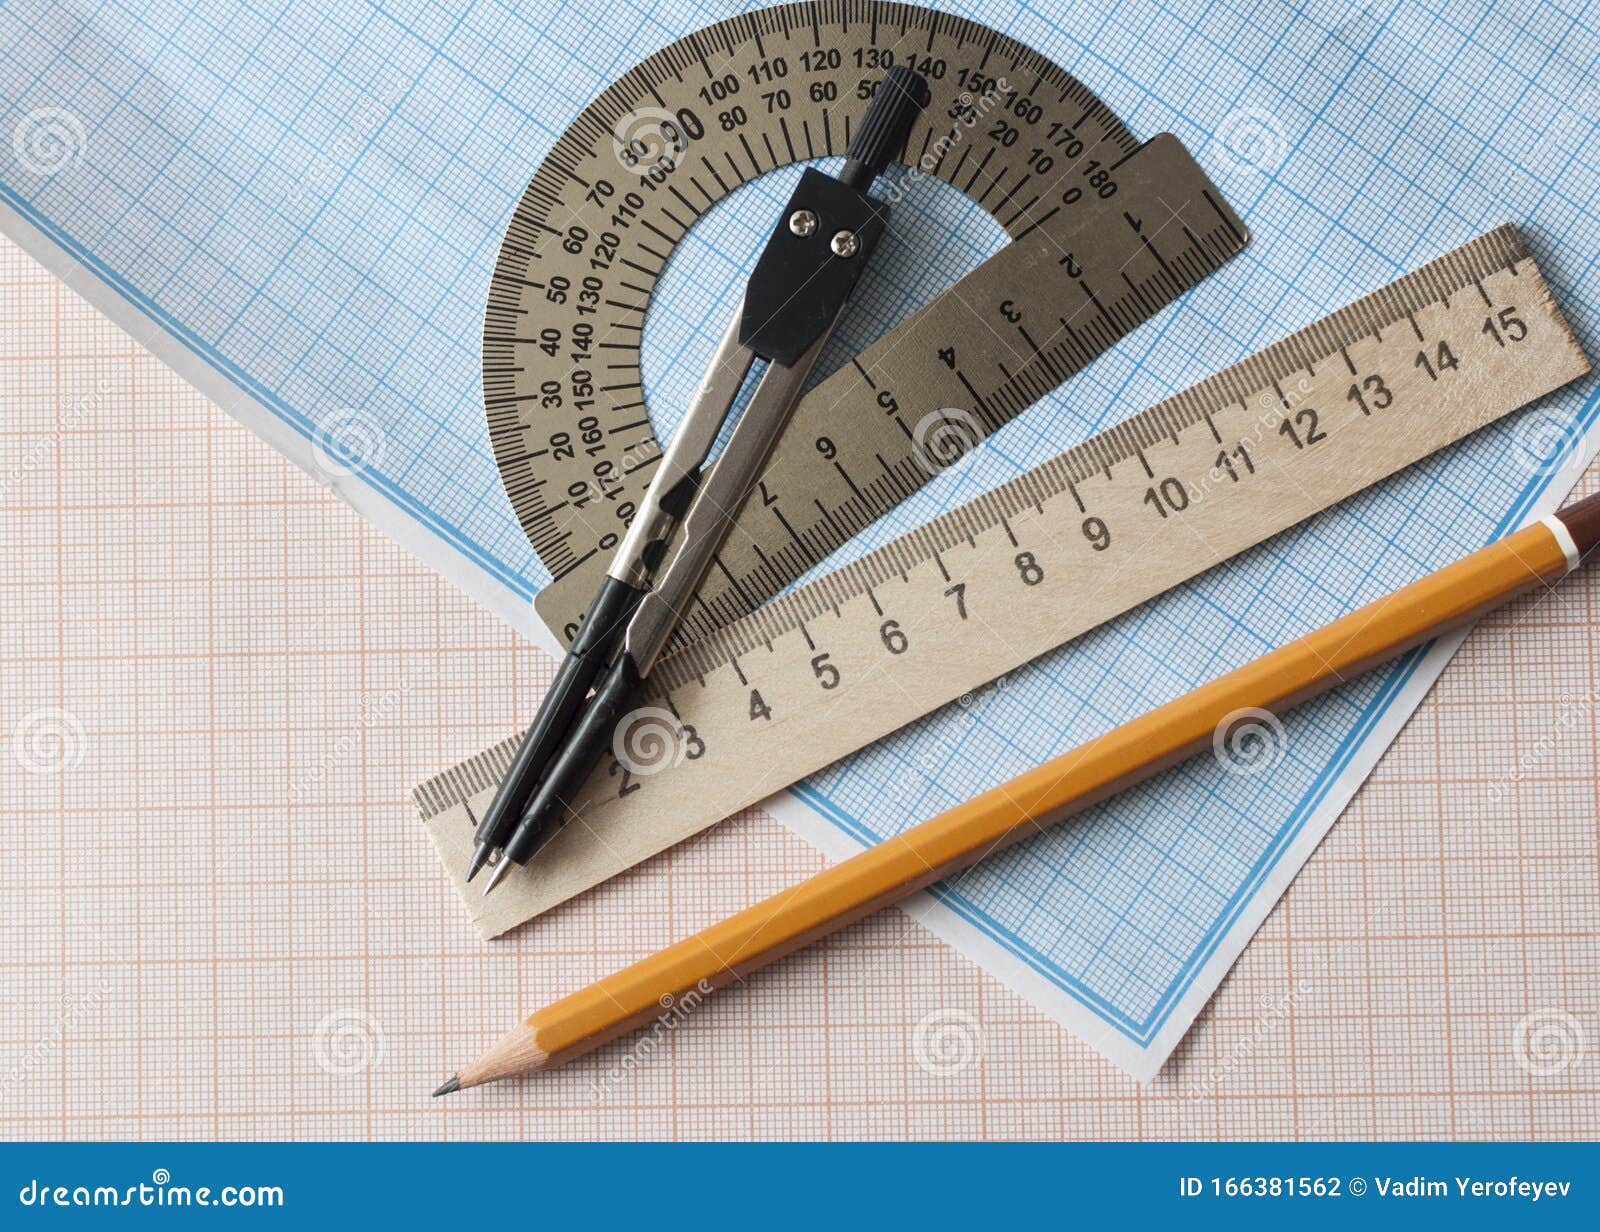 На столе лежит линейка карандаш. Инструменты для математики. Бумага карандаш линейка фото. Карандаш линейка циркуль наждачная бумага. Изобретение вечный карандаш с линейкой.